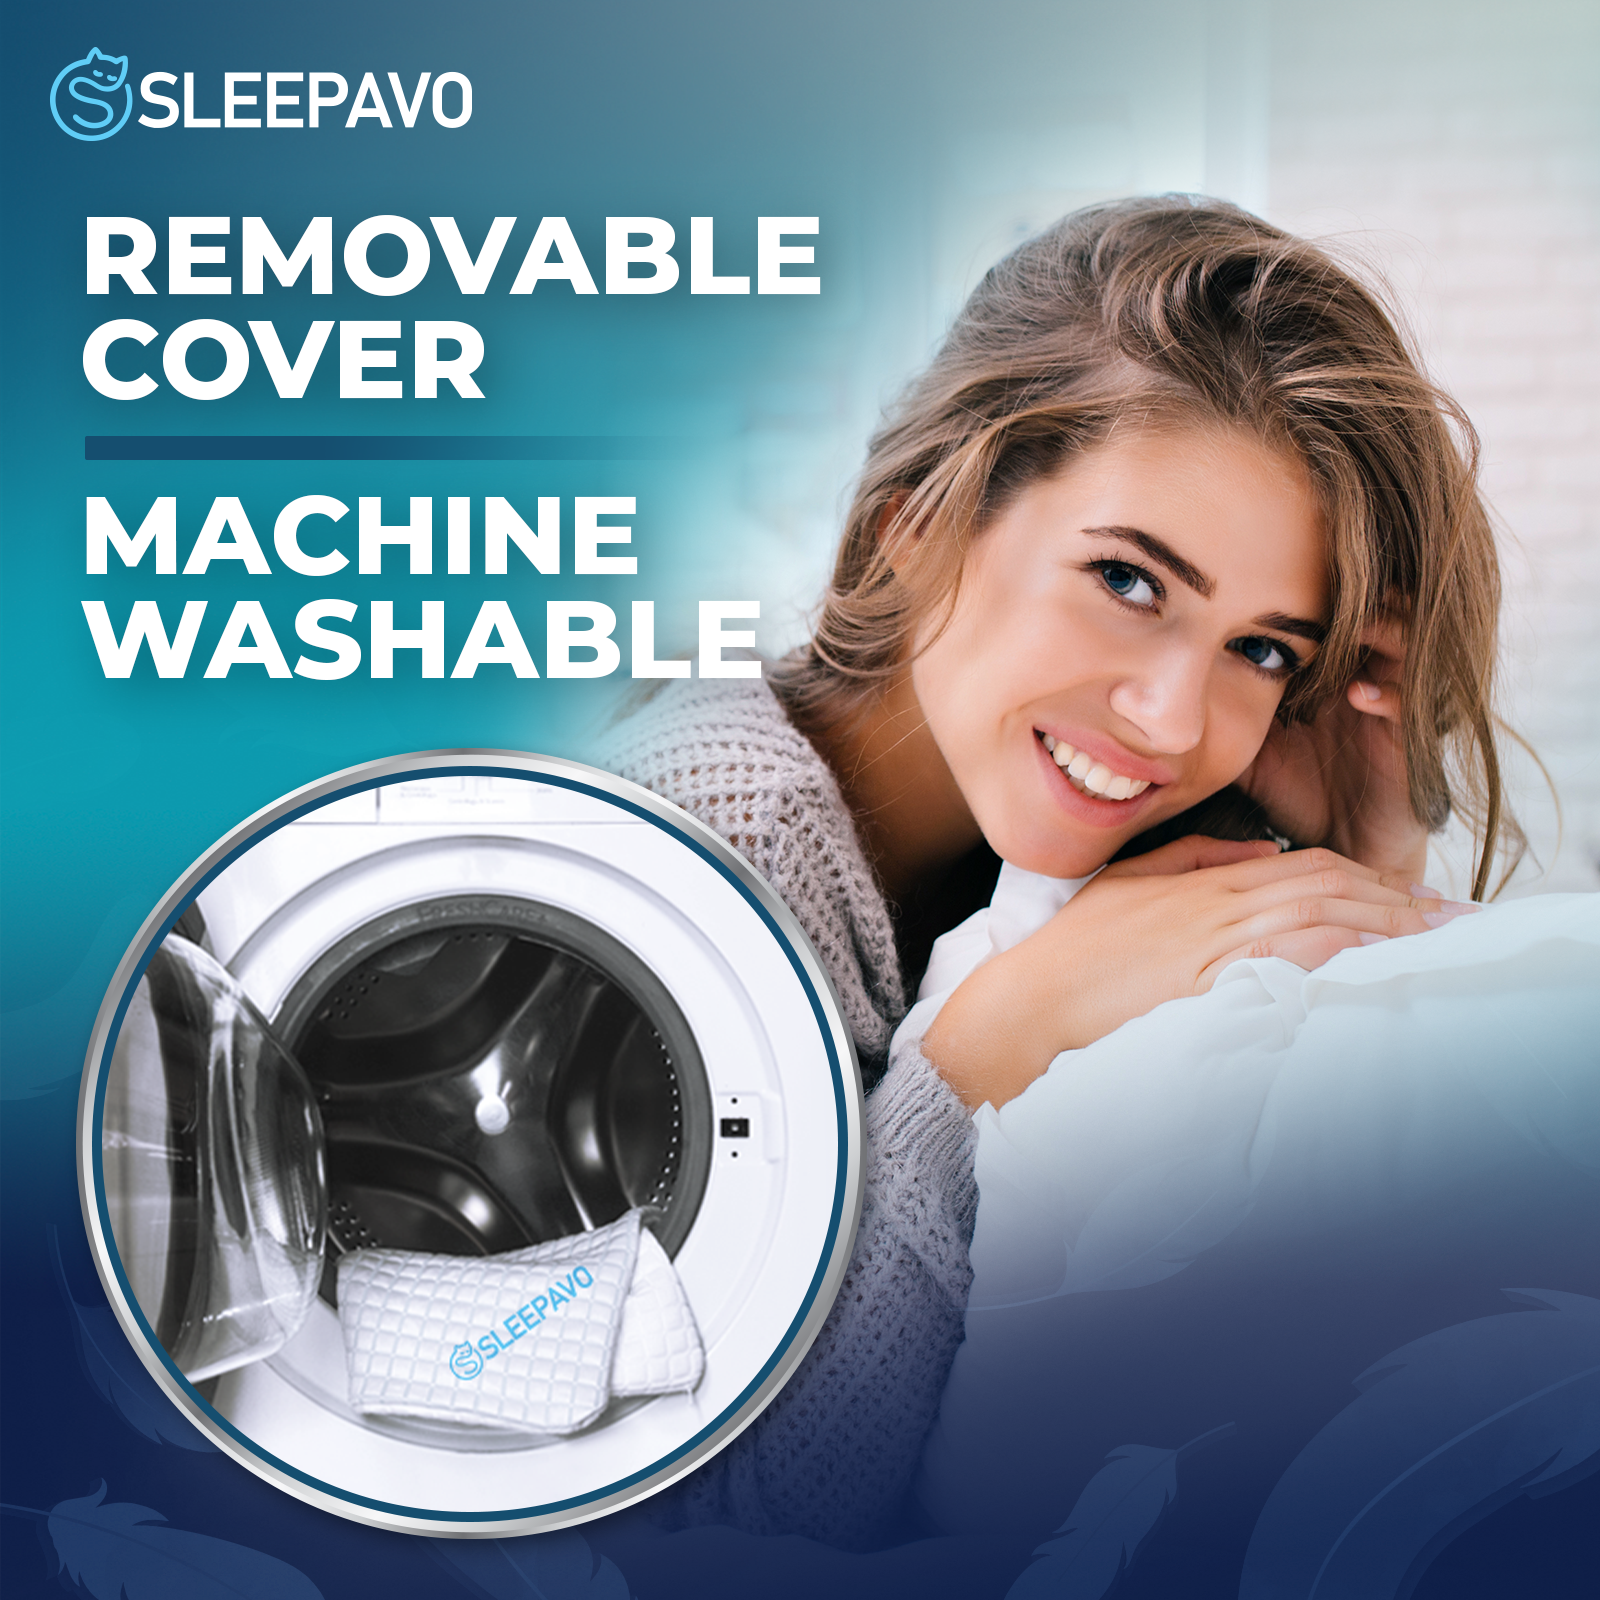 Adjustable Shredded Memory Foam Pillow (Queen Size) – Sleepavo